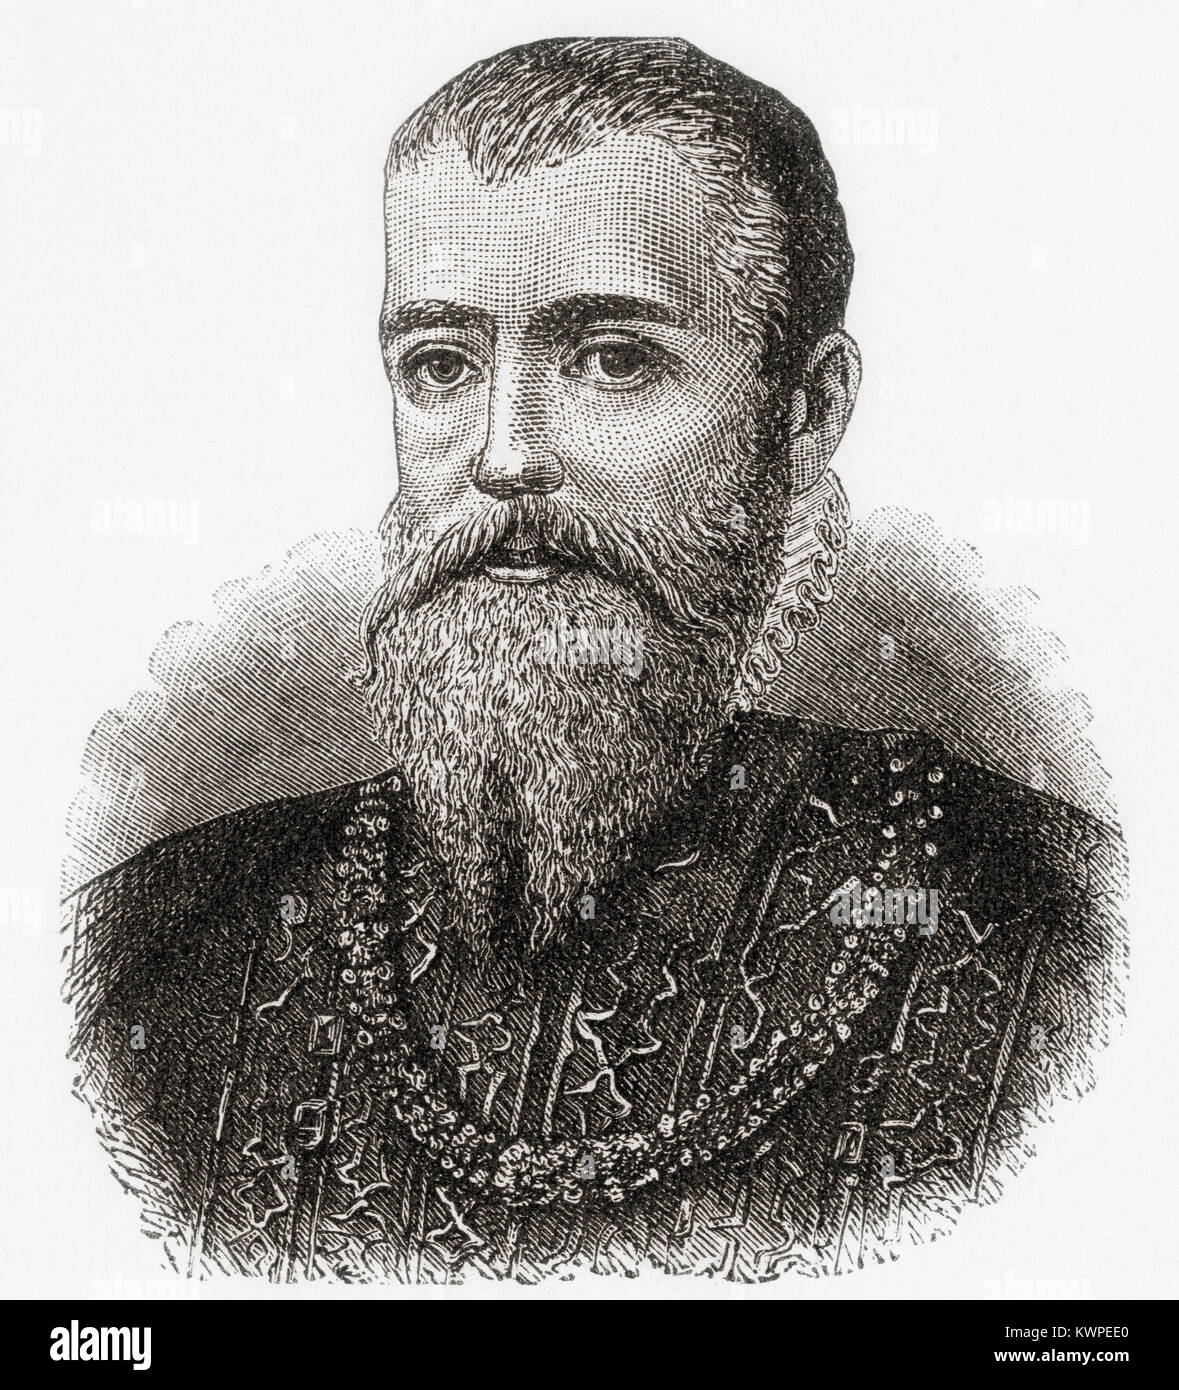 Eric XIV, 1533 - 1577. König von Schweden. Von Station und Lock's illustrierte Geschichte der Welt, veröffentlicht C 1882. Stockfoto